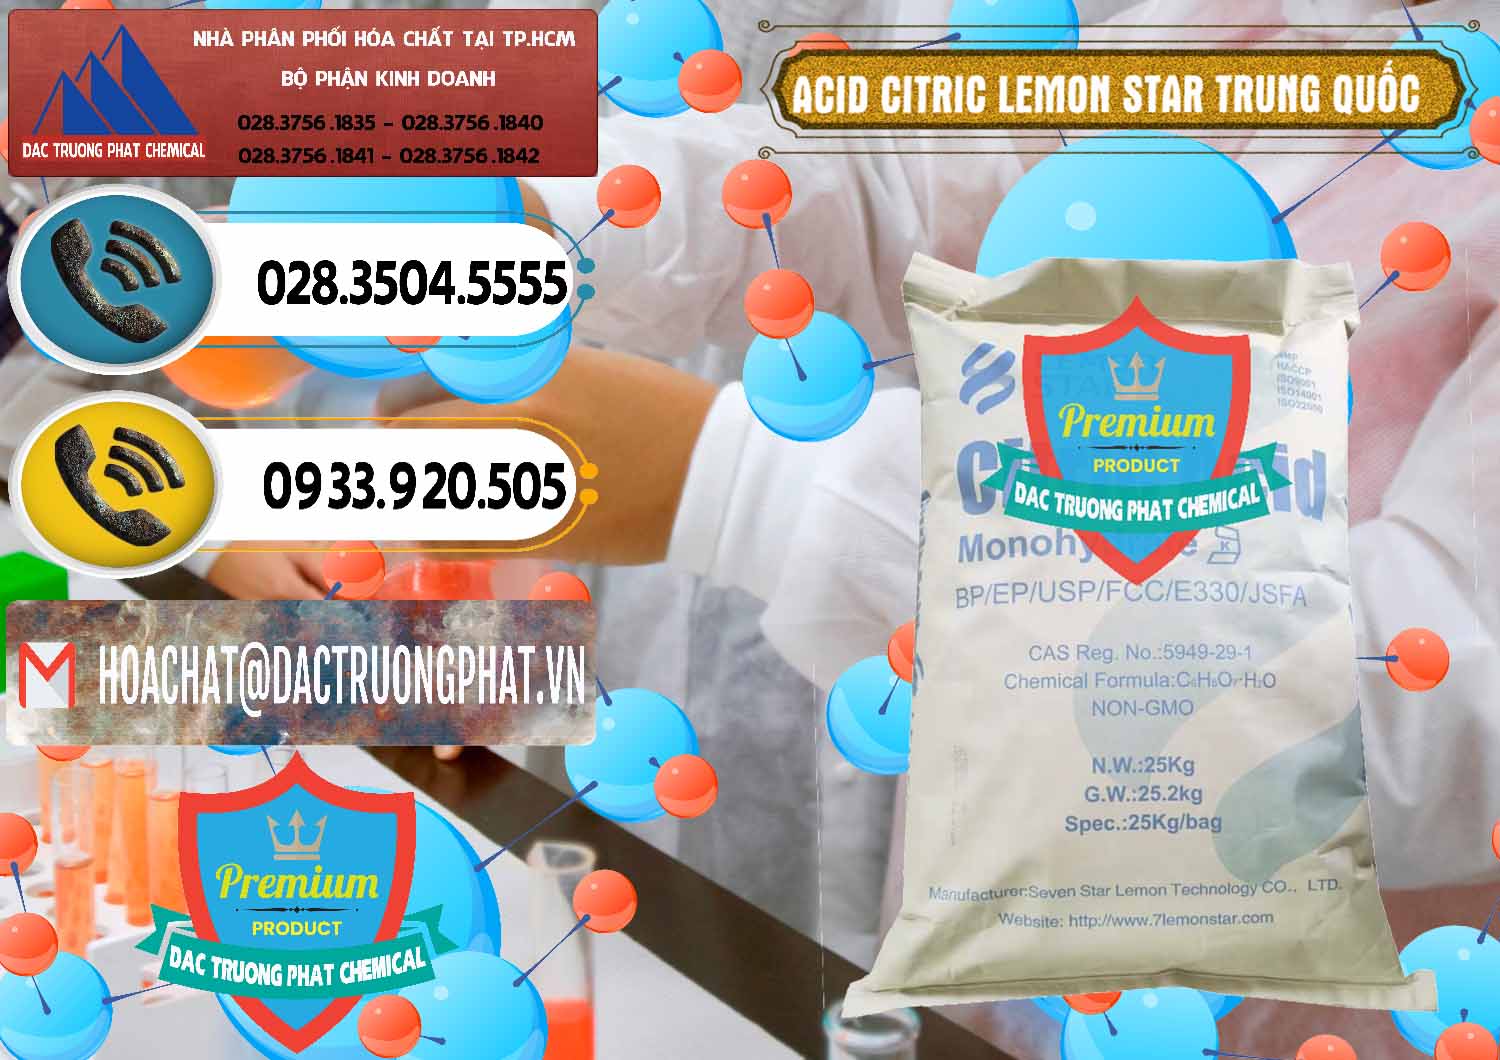 Đơn vị chuyên bán ( cung ứng ) Acid Citric - Axit Citric BP/EP/USP/FCC/E330 Lemon Star Trung Quốc China - 0286 - Nơi chuyên cung cấp ( nhập khẩu ) hóa chất tại TP.HCM - hoachatdetnhuom.vn